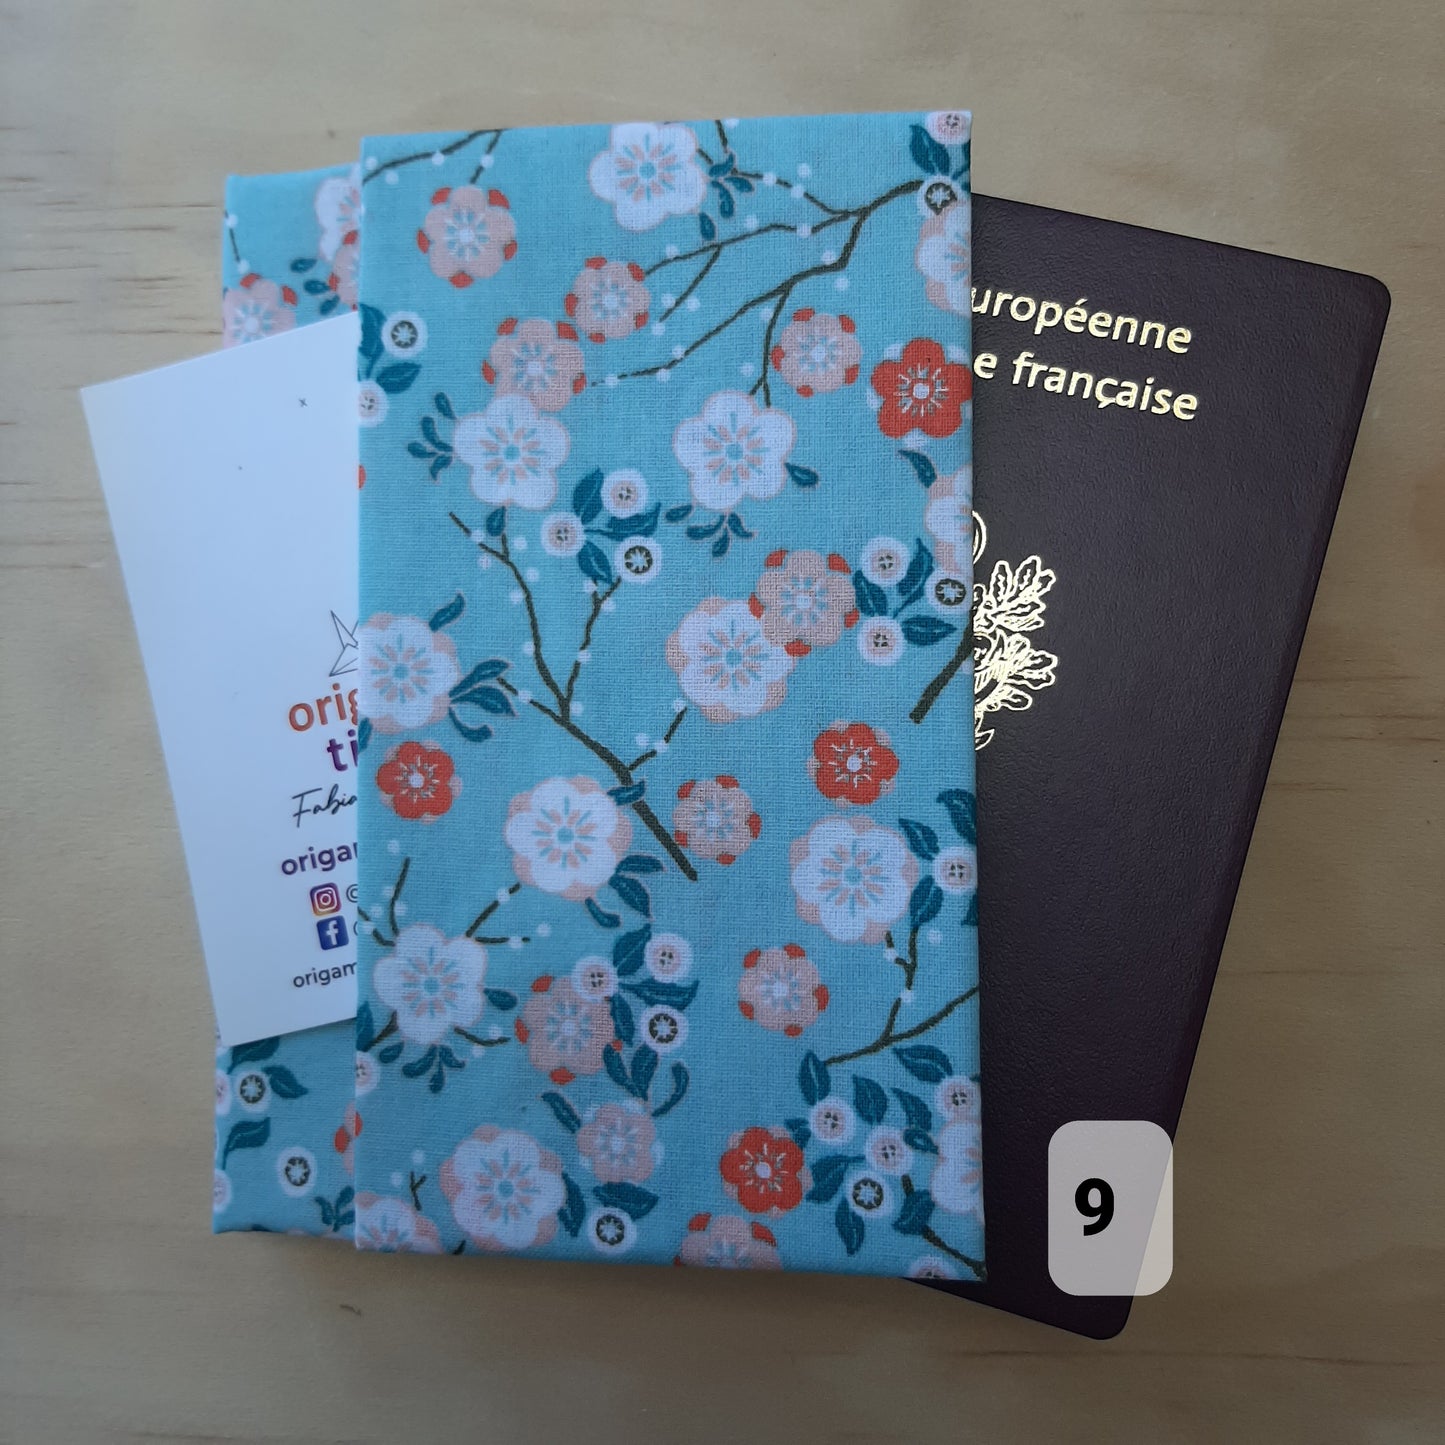 Protège-passeport, pochette porte-passeport, étui pour passeport, cadeau pour voyageur, portefeuille de voyage - cadeau St Valentin